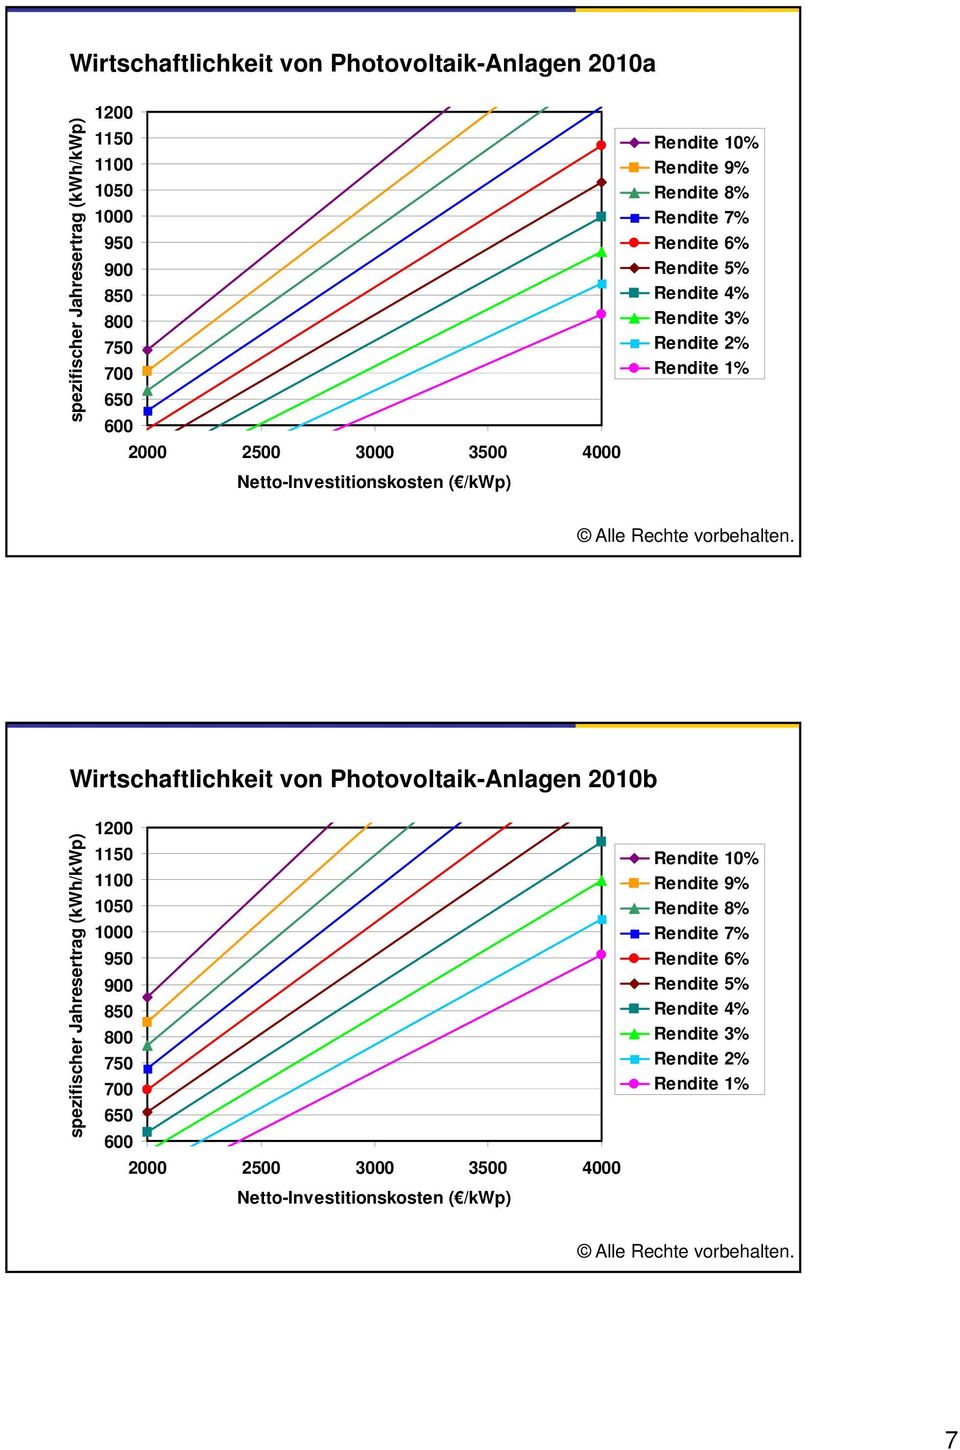 Wirtschaftlichkeit von Photovoltaik-Anlagen 2010b fischer Jahresertrag (kw Wh/kWp) spezif 1200 1150 1100 1050 1000 950 900 850 800 750 700 650 600 2000 2500 